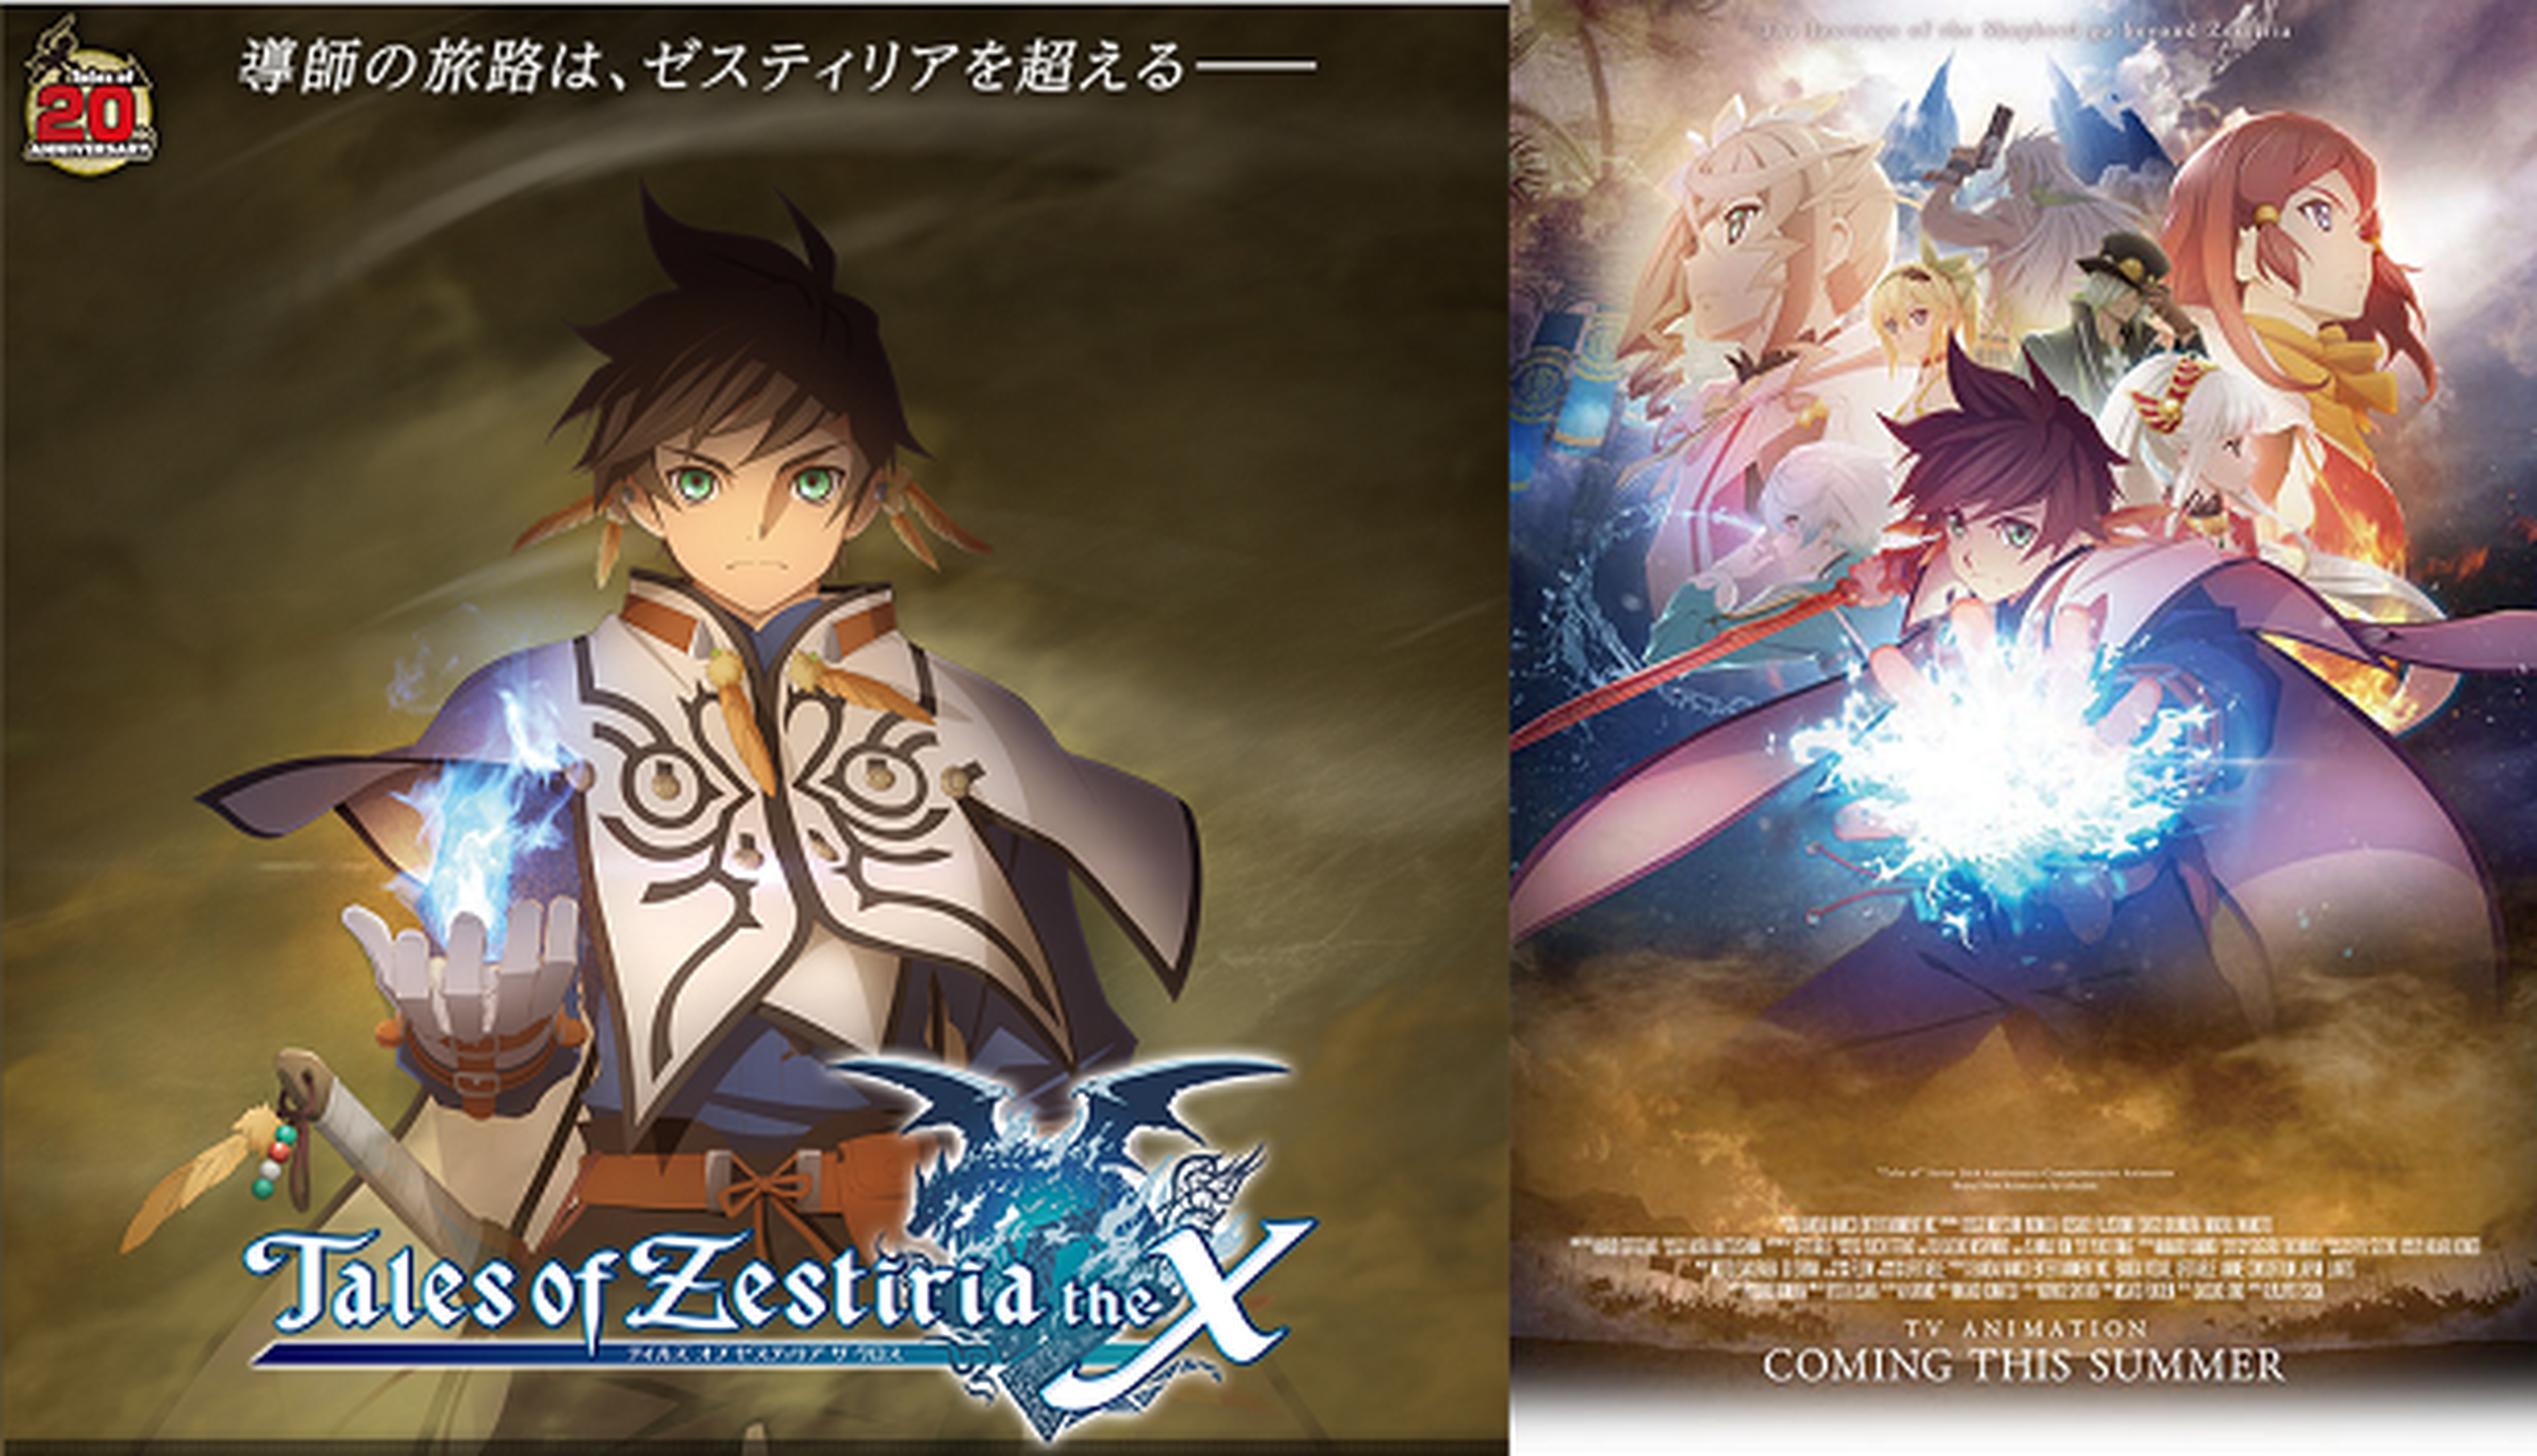 Tales of Zestiria the X se estrena en julio